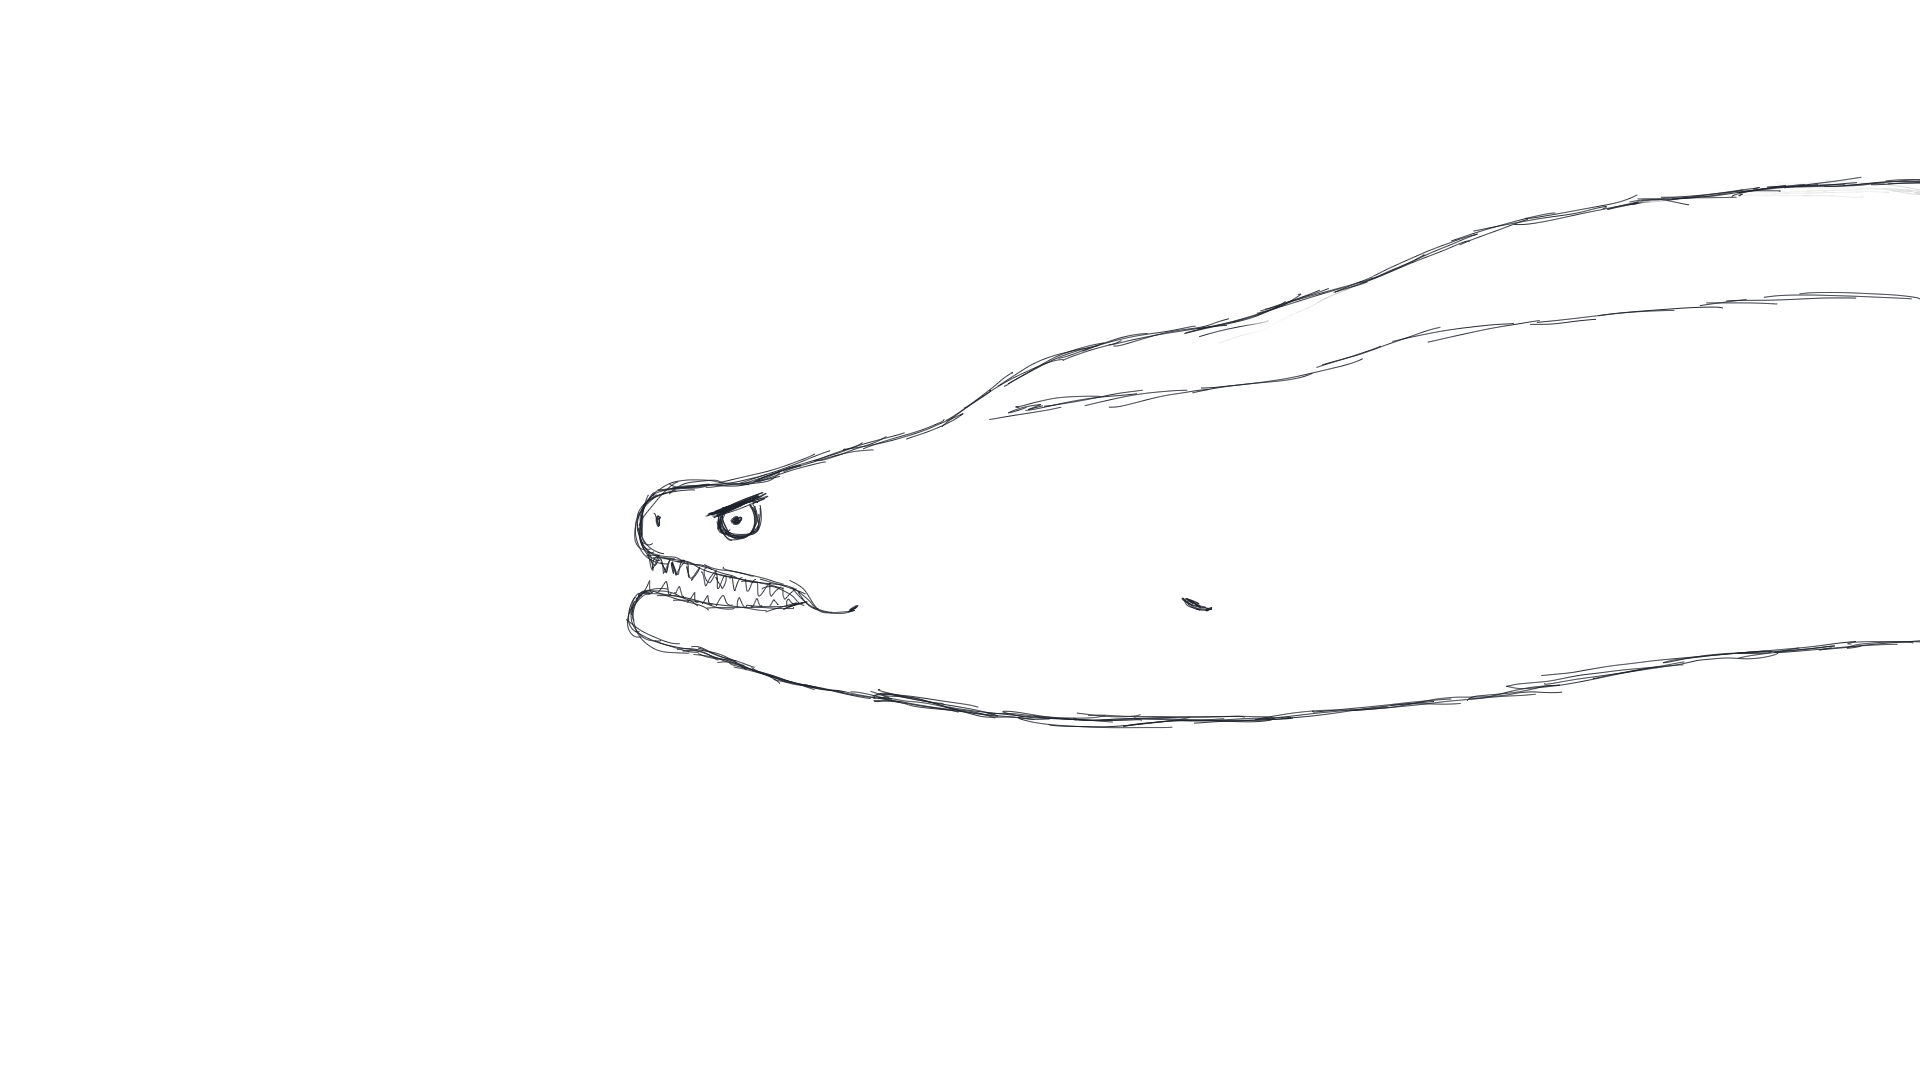 boss-moray-eel-sketch